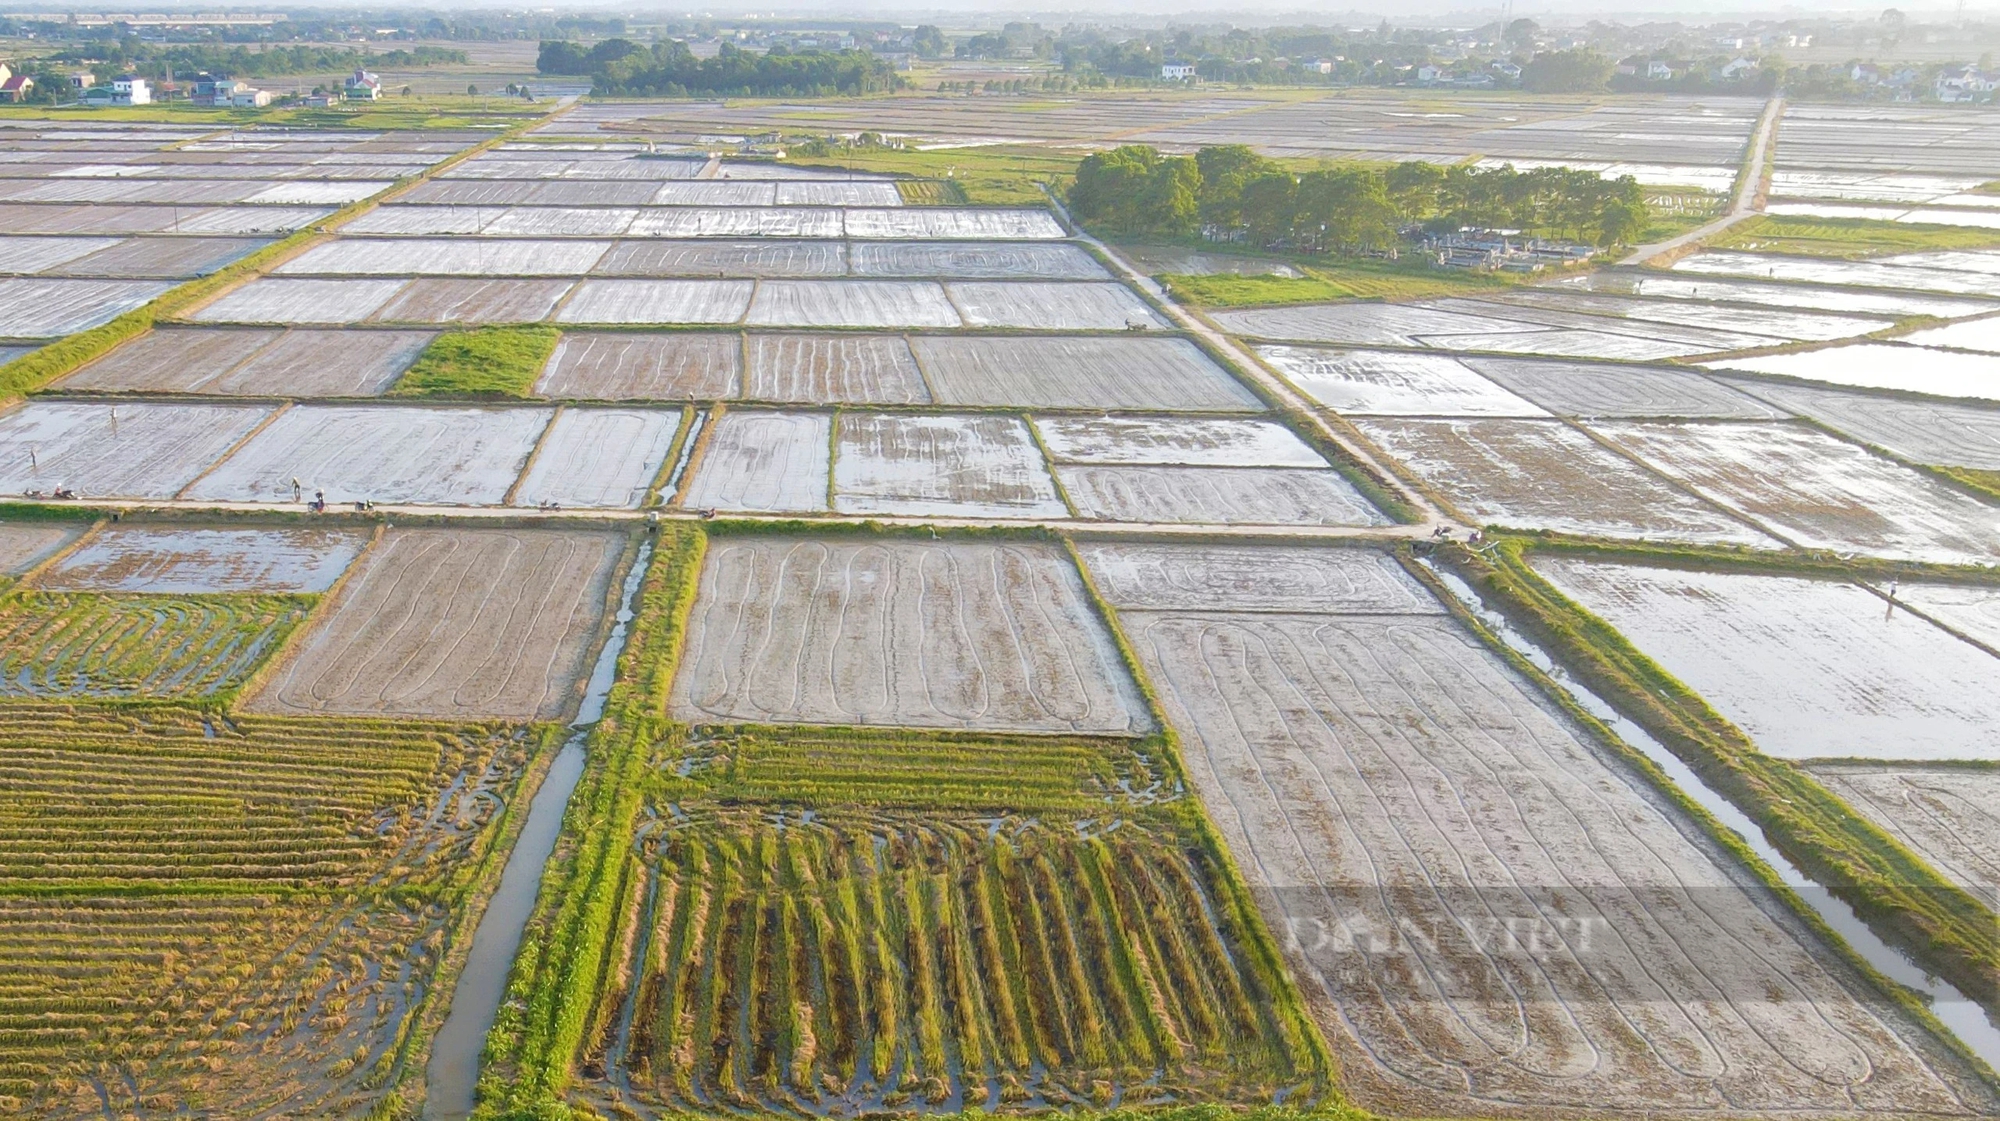 Thợ cấy lúa ở Nghệ An đắt khách, có nơi trả công gần nửa triệu một ngày vẫn khó thuê- Ảnh 3.